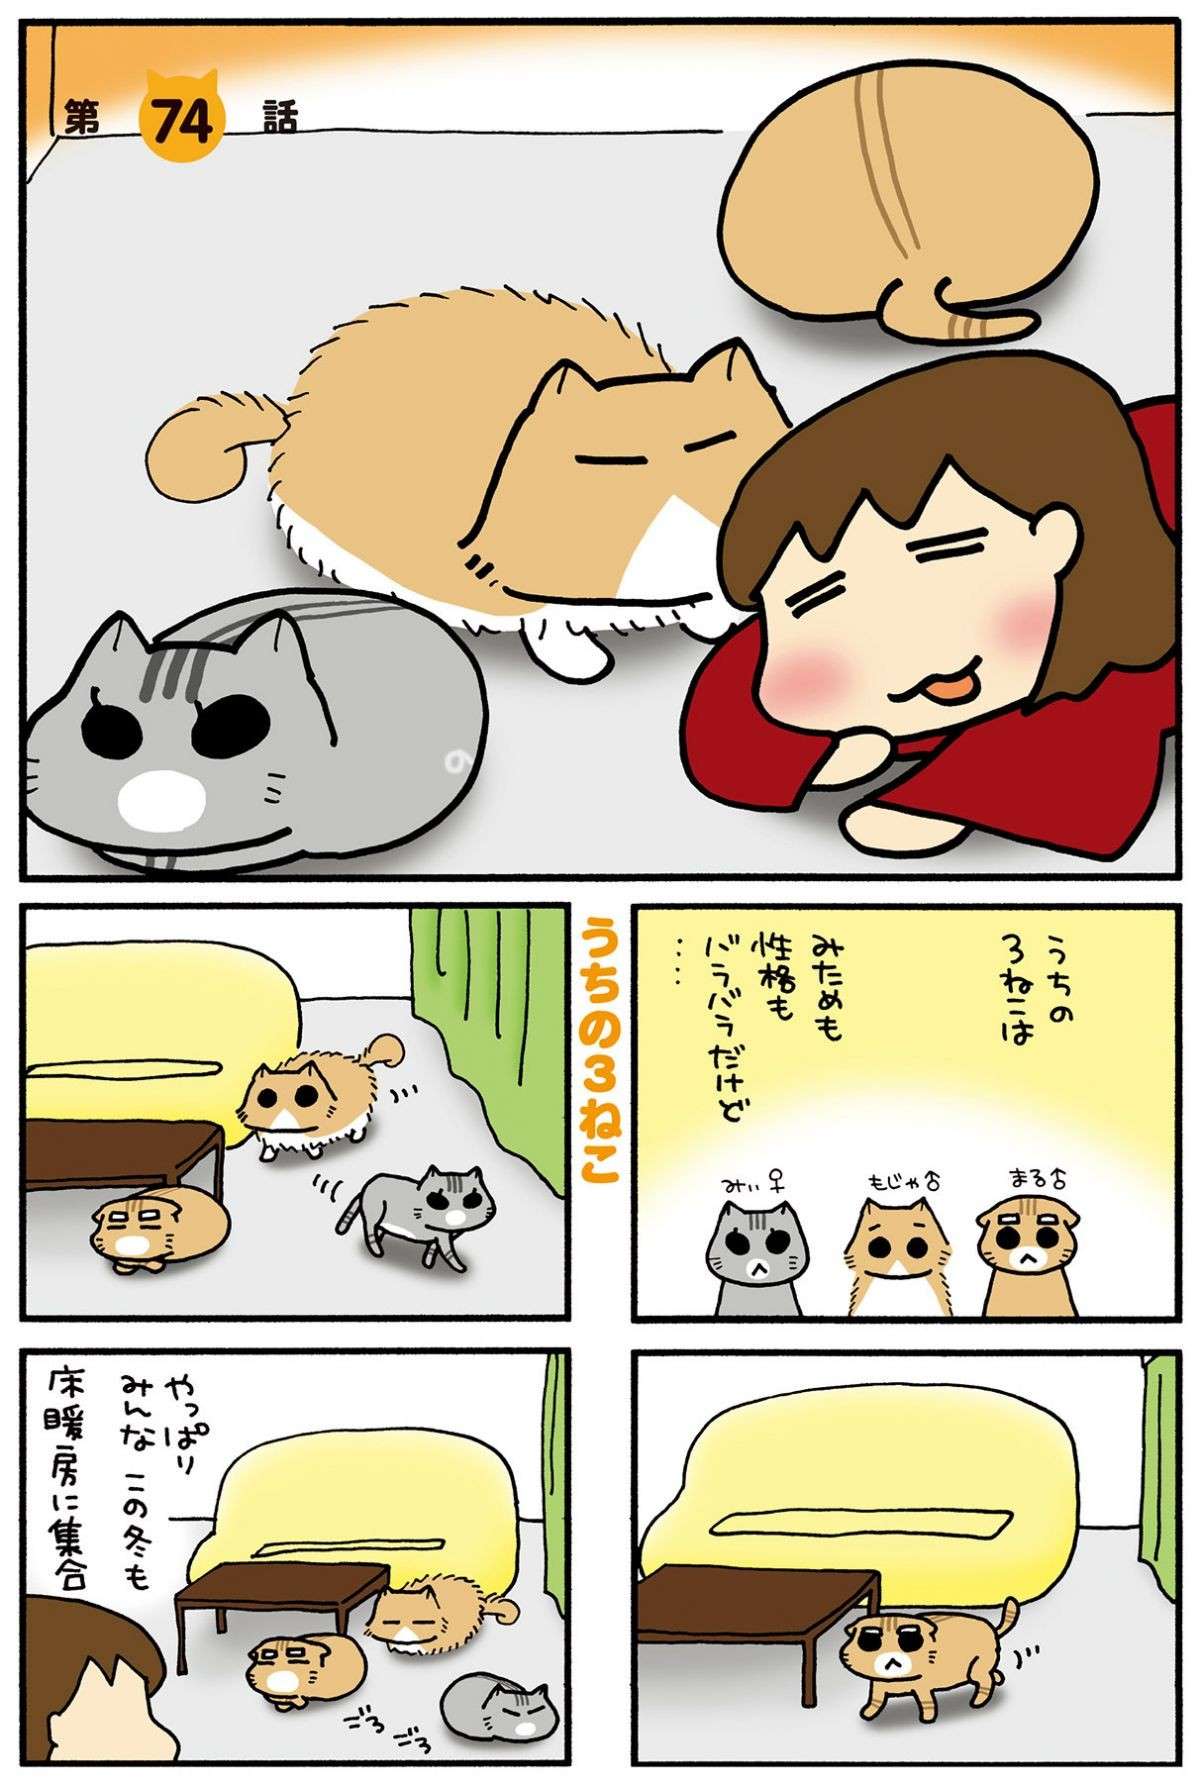 「いや、よくねえよ」猫のトイレの疑問、解決はしたものの／うちの3ねこ 4 uchinosanneko04_015.jpg